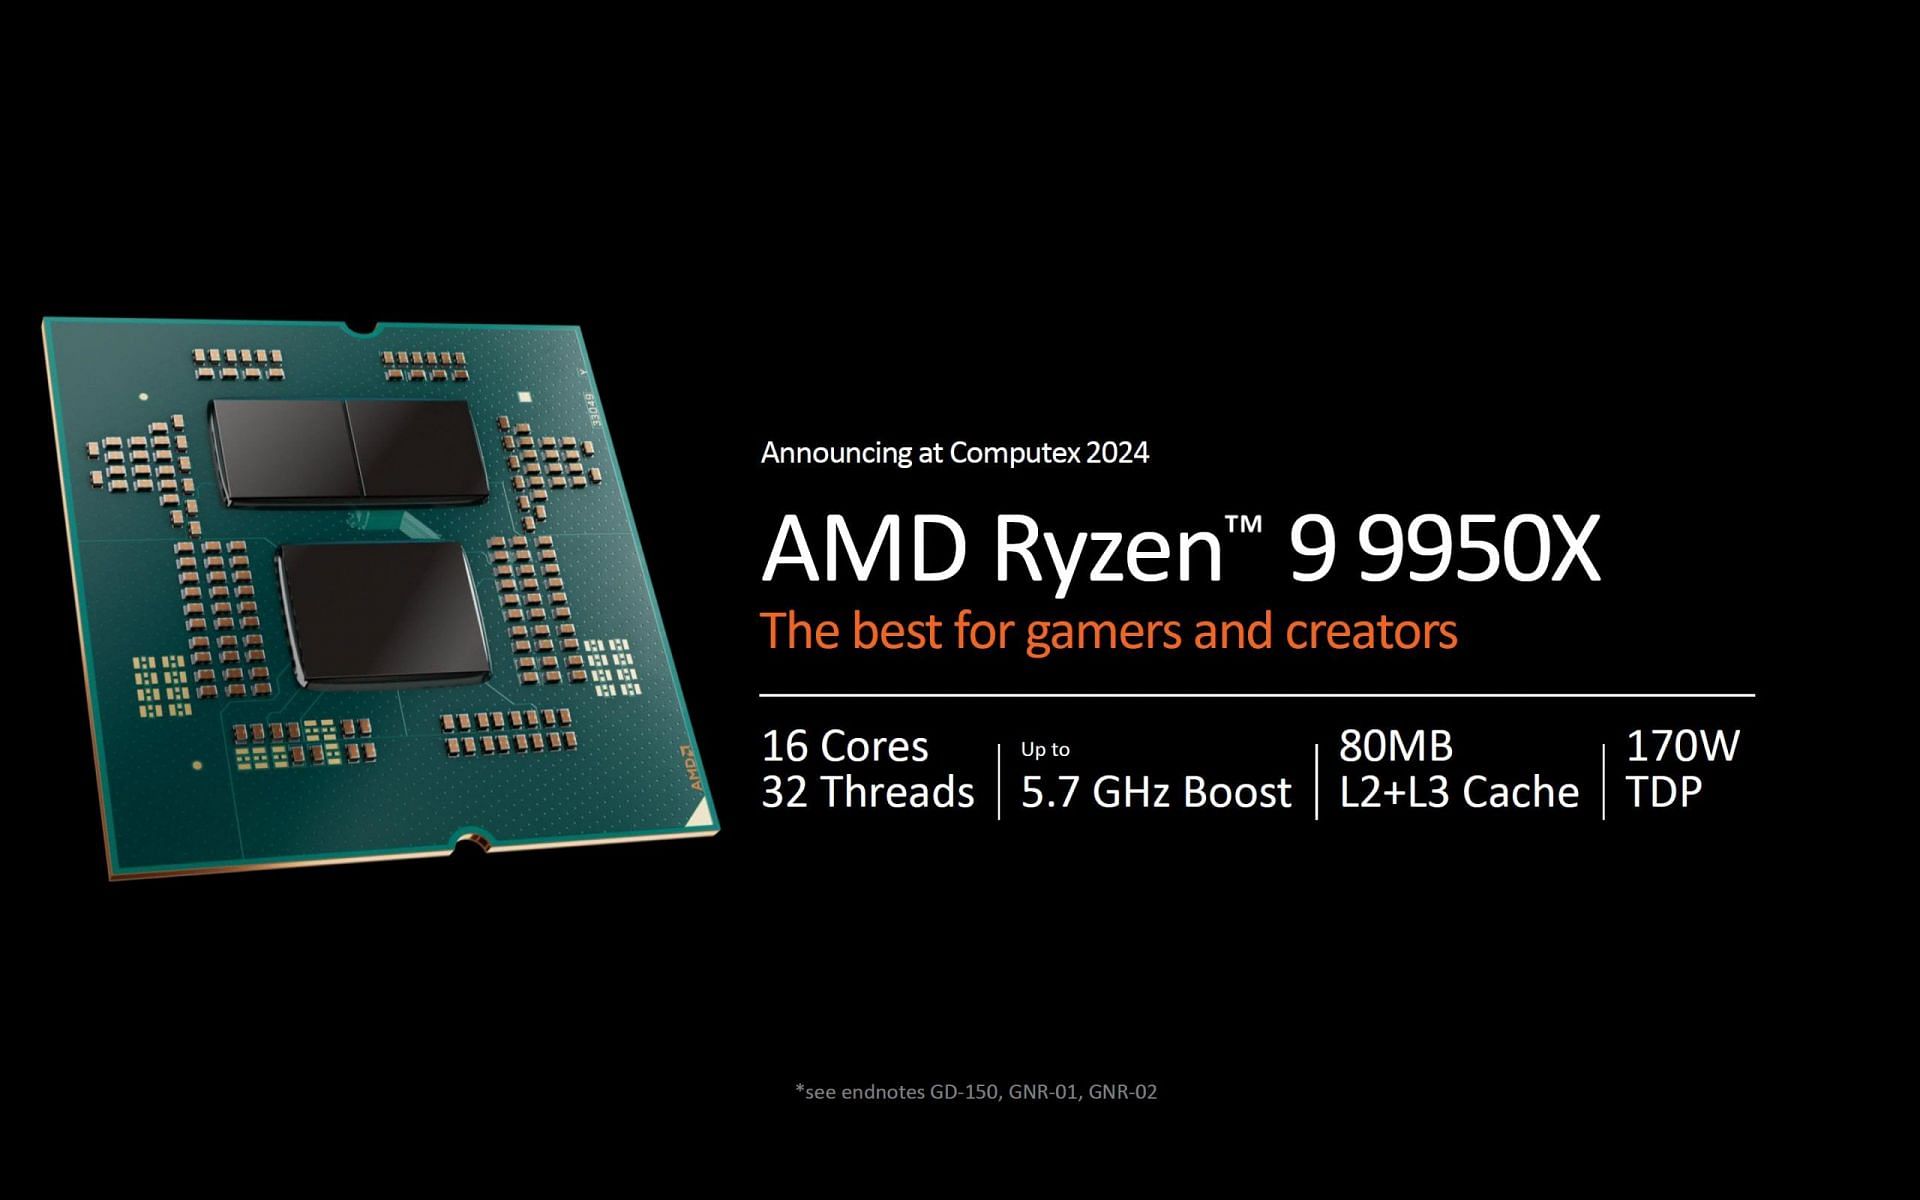 AMD Ryzen 9 9950X (Image via AMD)